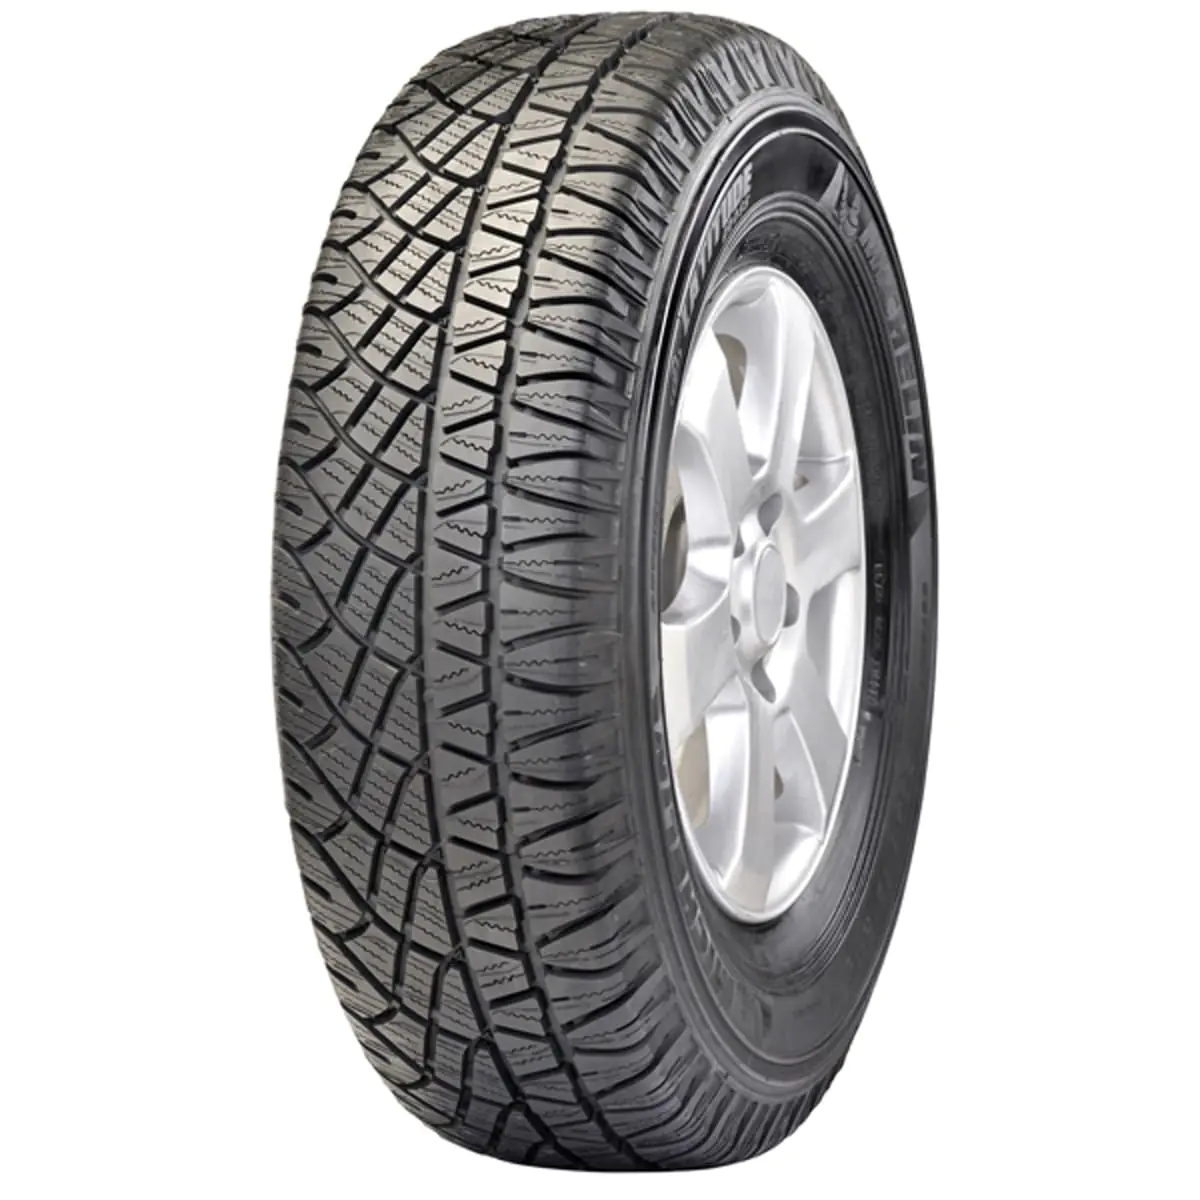 Michelin Michelin 195/80 R15 96T LATITUDE CROSS pneumatici nuovi Estivo 